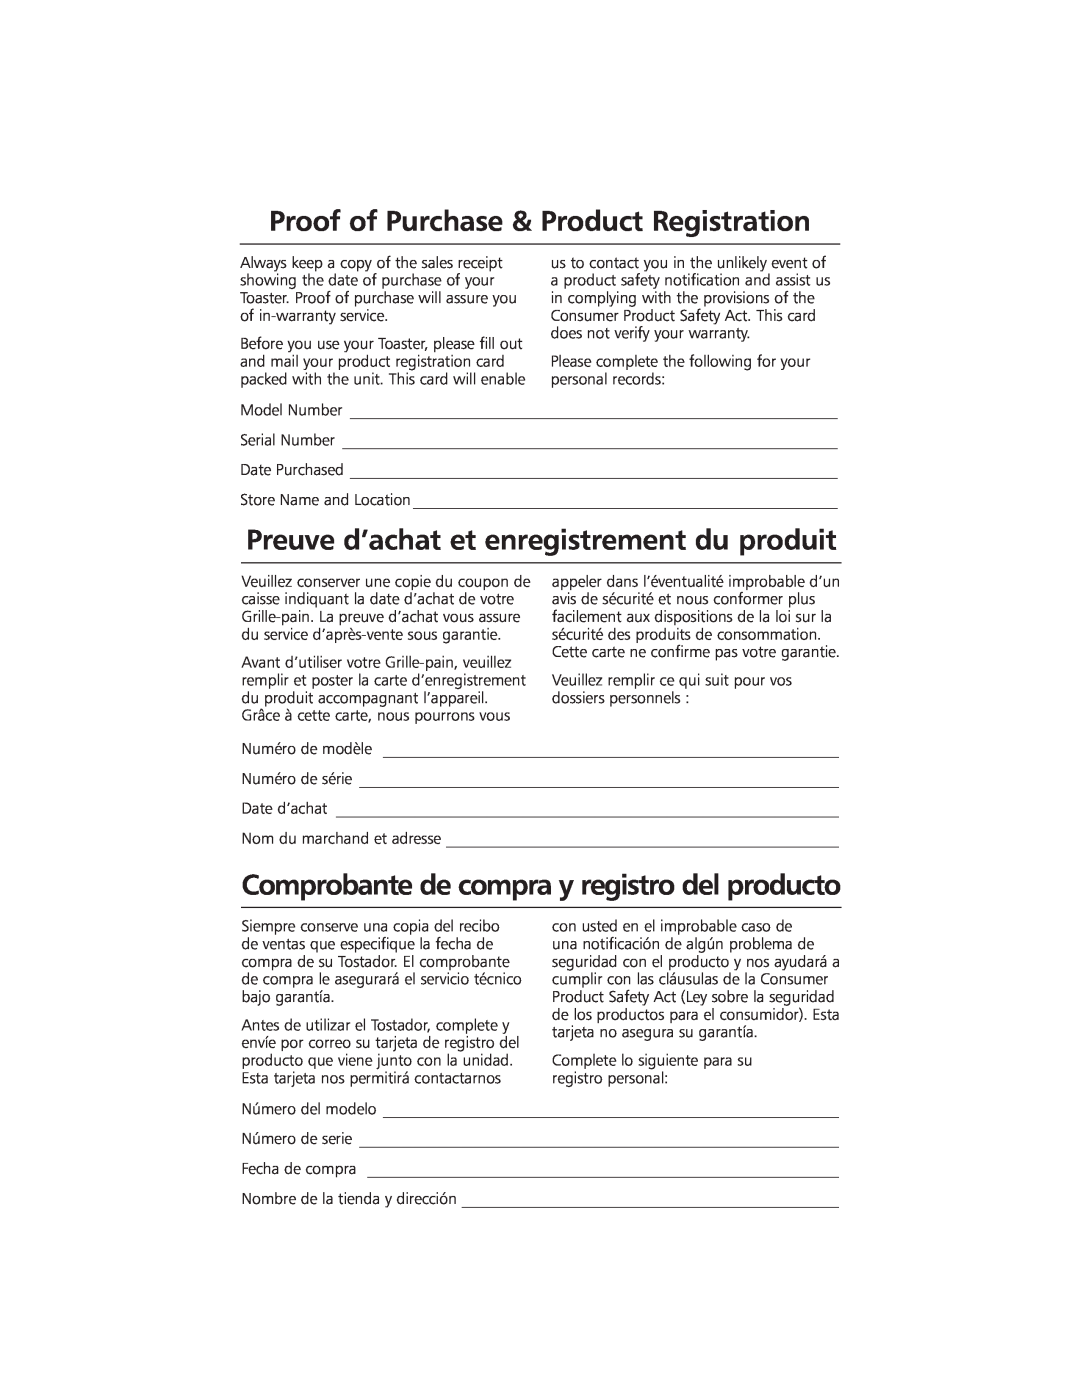 KitchenAid KMTT200 manual Proof of Purchase & Product Registration, Preuve d’achat et enregistrement du produit 